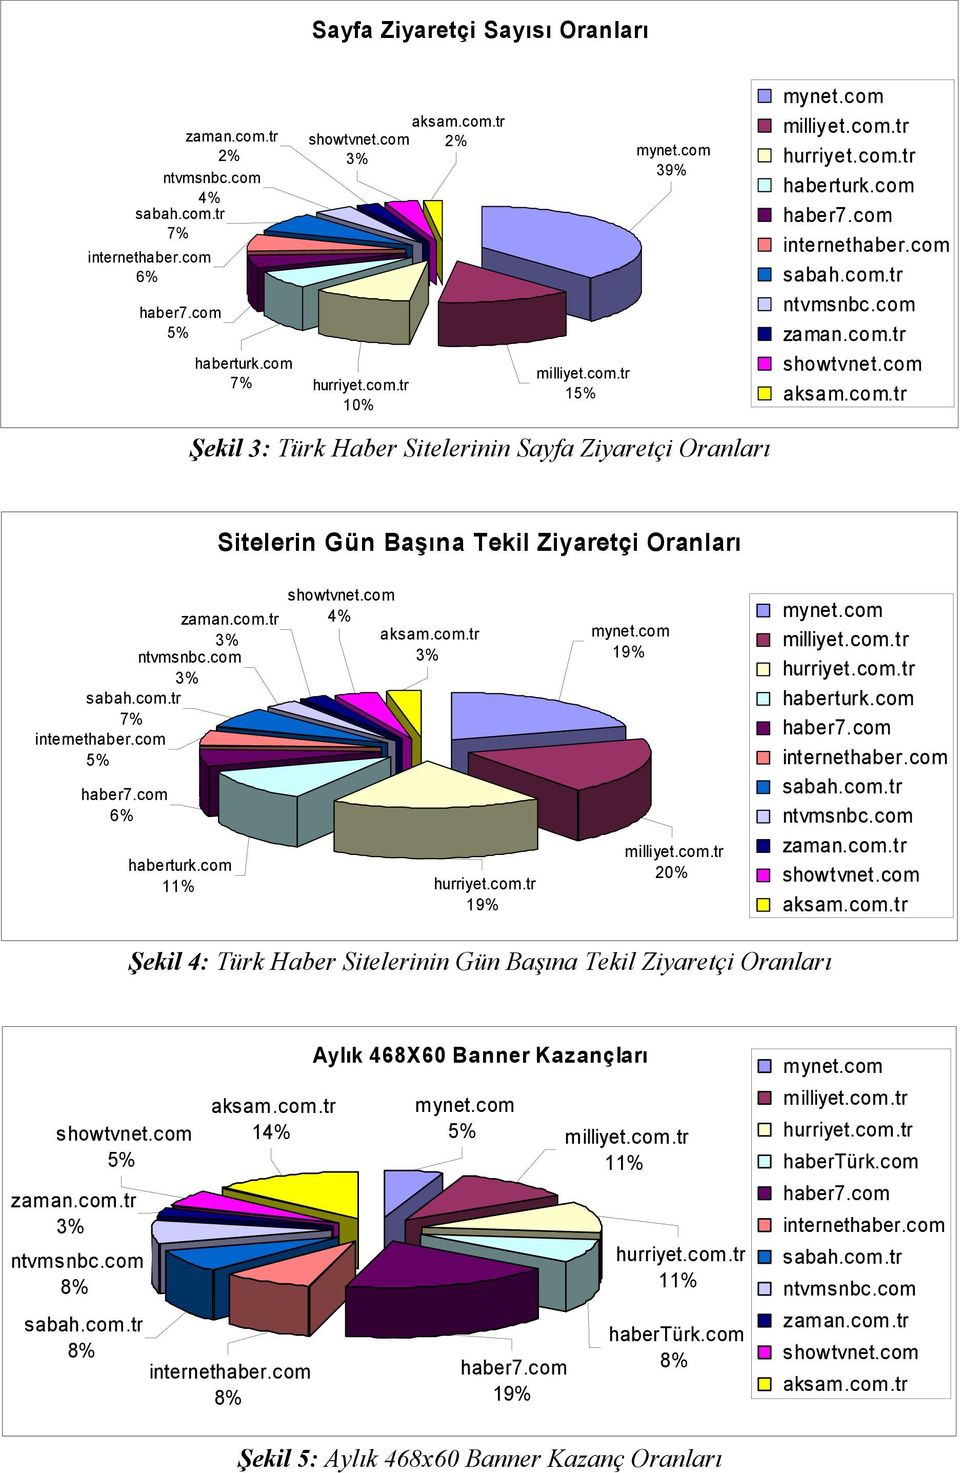 Şekil 4: Türk Haber Sitelerinin Gün Başına Tekil Ziyaretçi Oranları 5% 1 Aylık 468X60